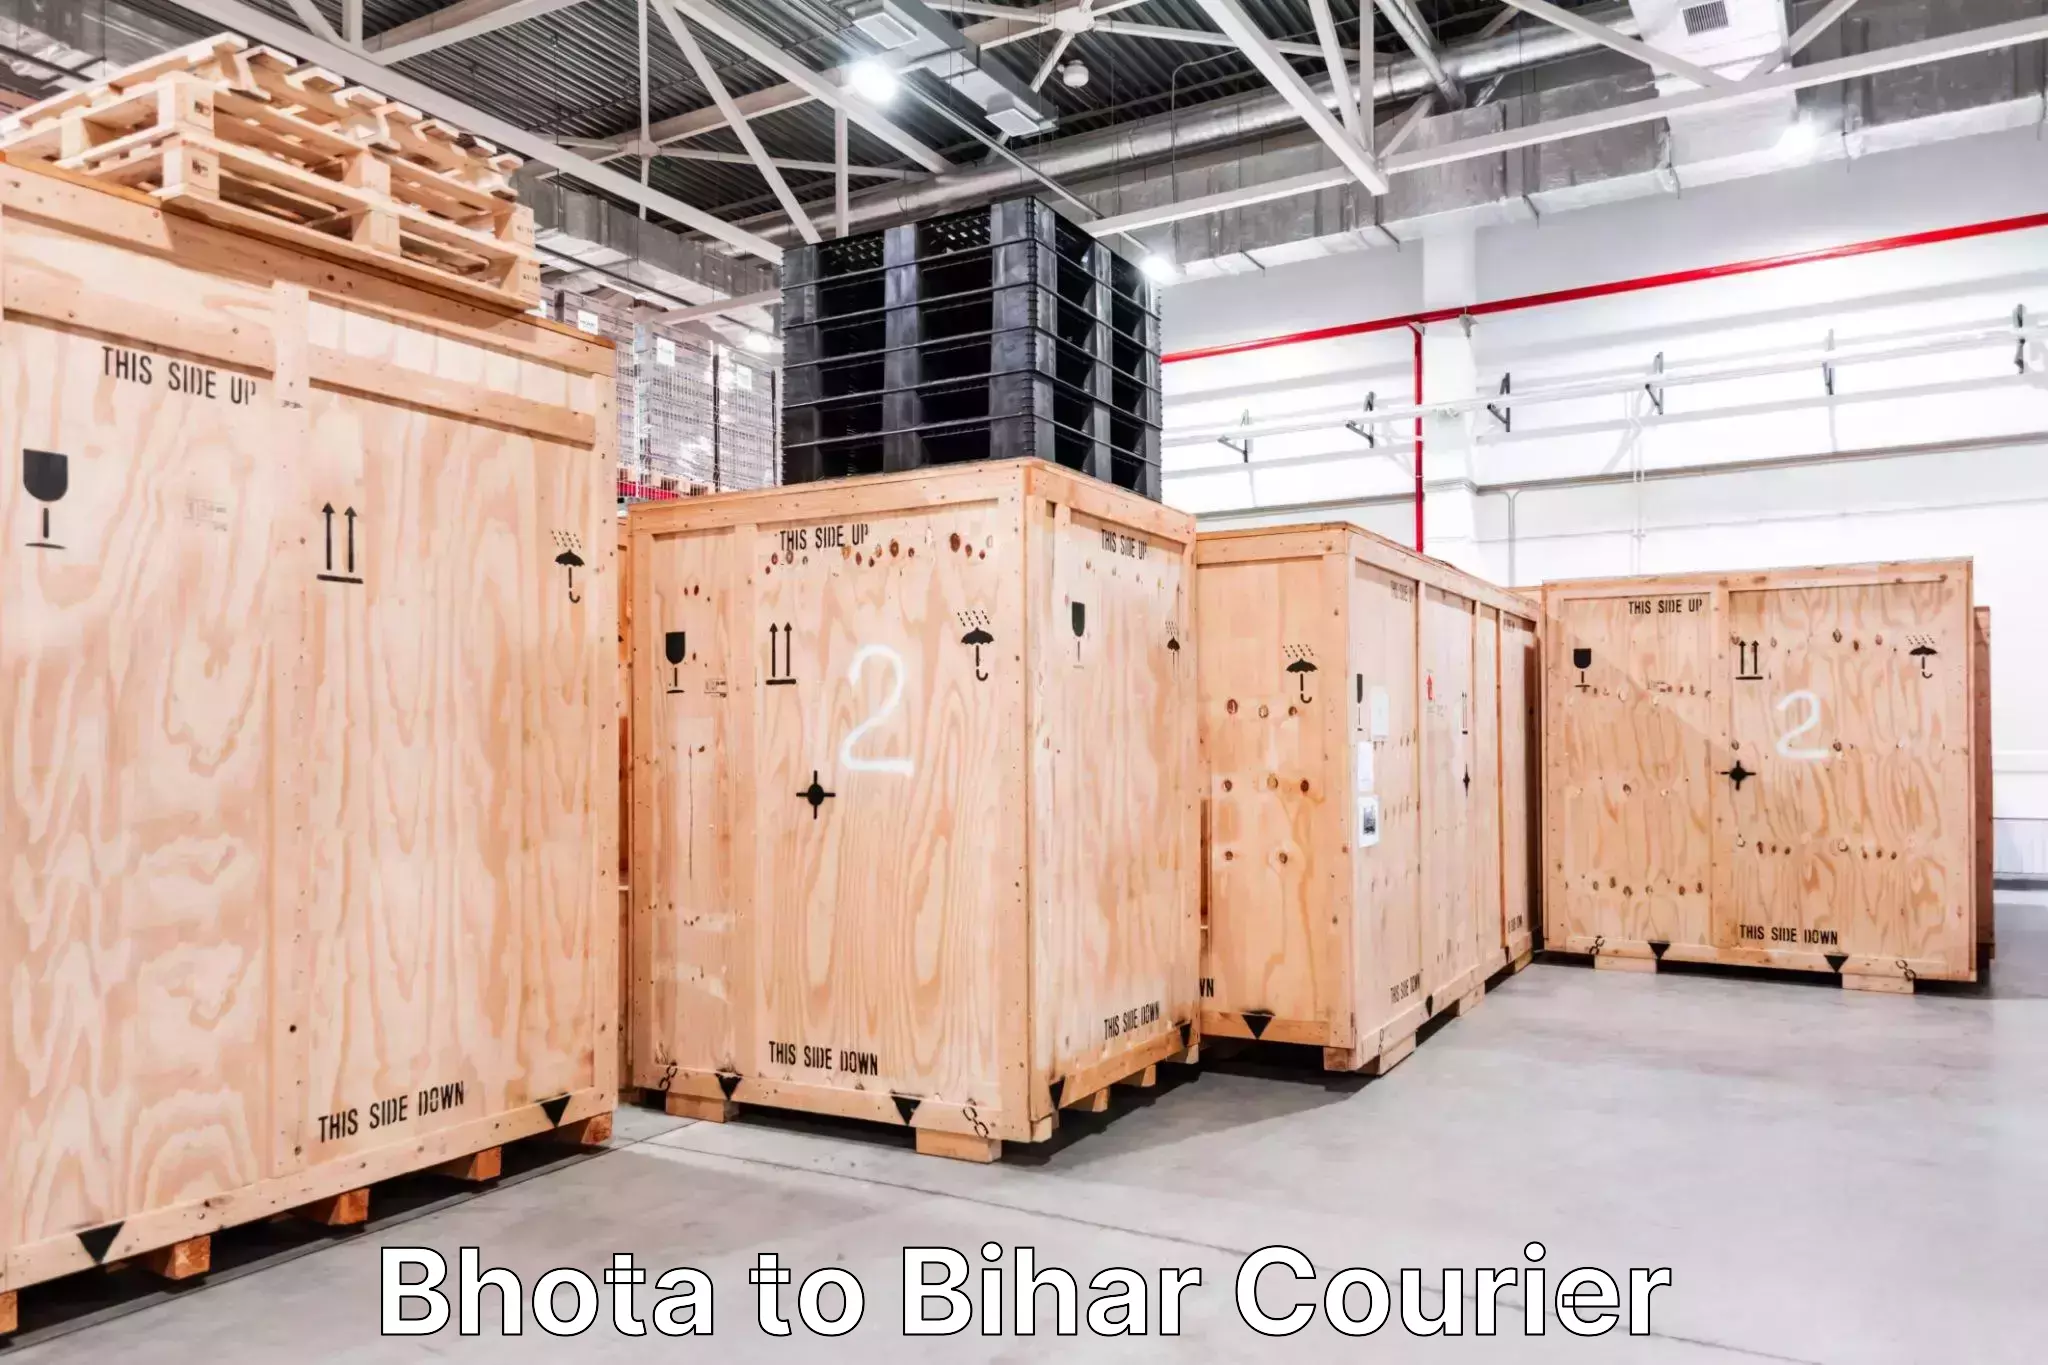 Door-to-door baggage service Bhota to Bihar